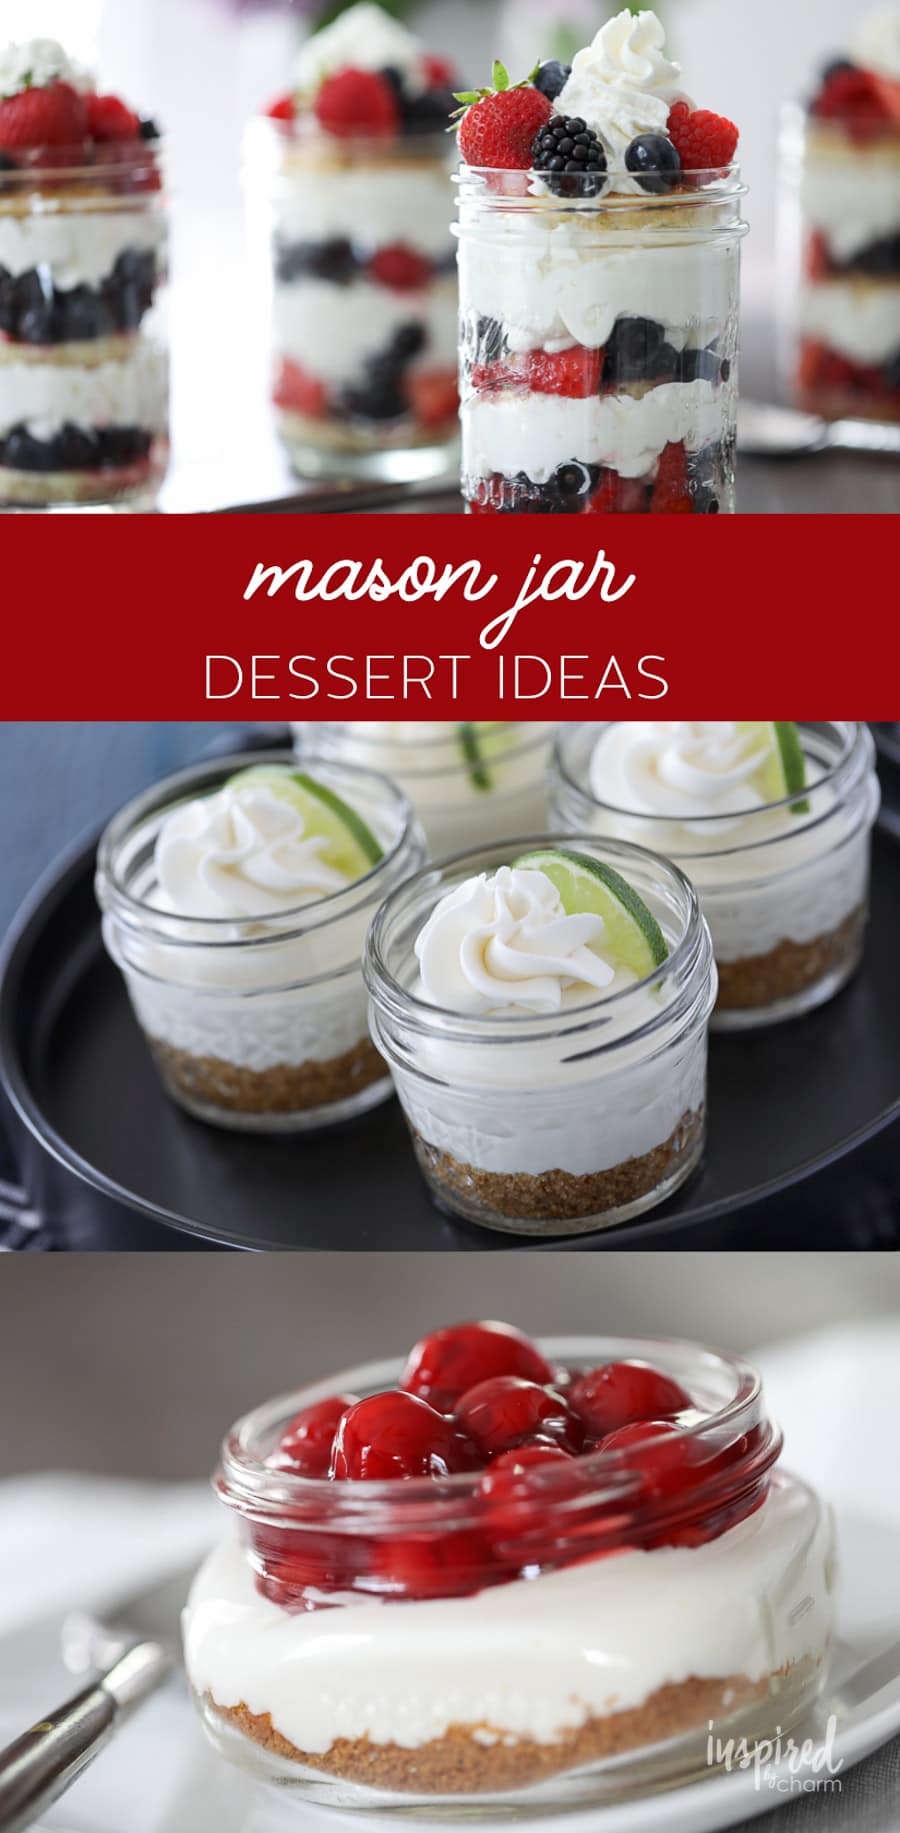 Mason Jar Dessert Ideas #mason #jar #dessert #desserts #recipe #dessertinajar #cake #cakeinajar